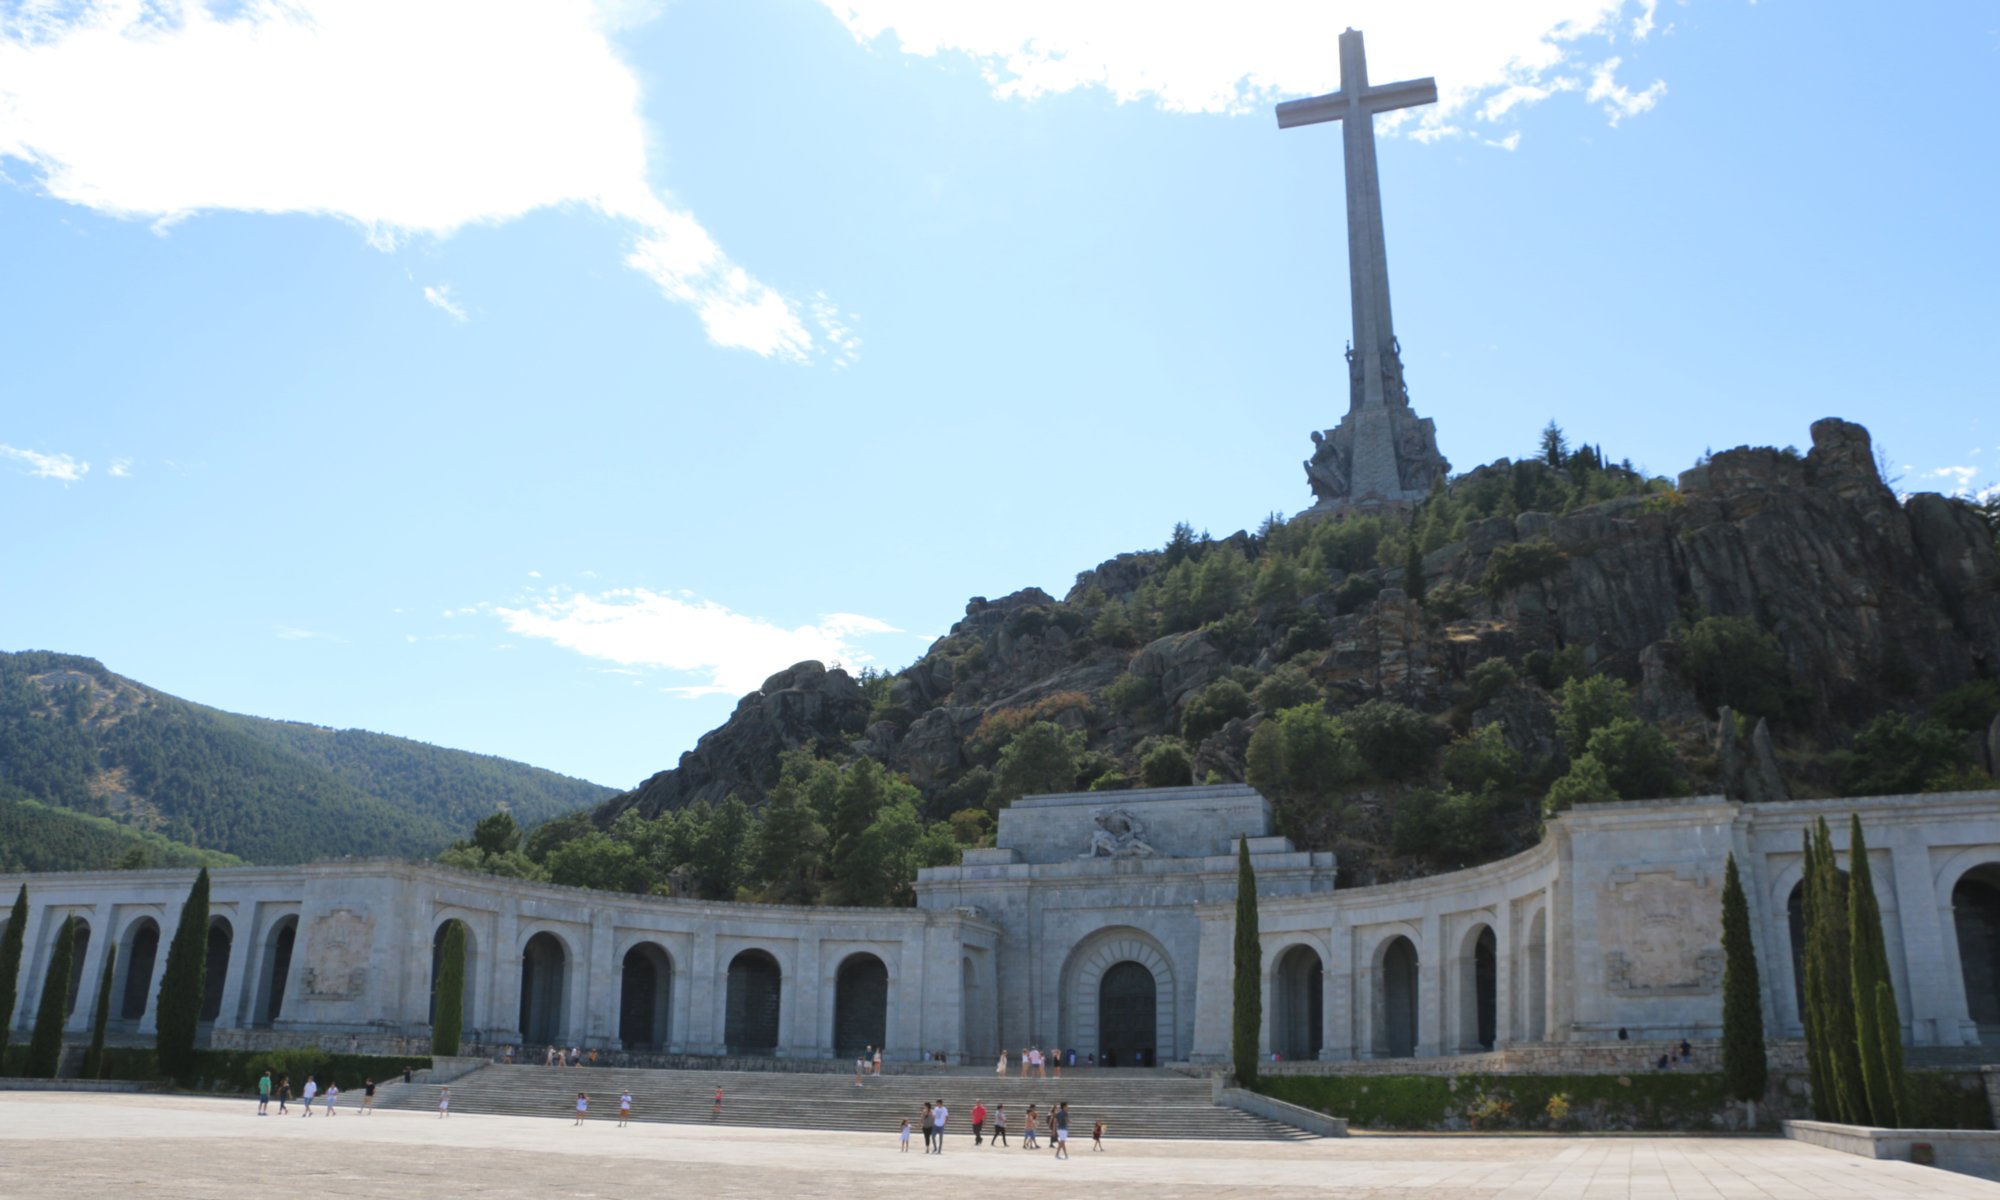 Monumento Nacional de Santa Cruz del Valle de los Caídos, Madrid